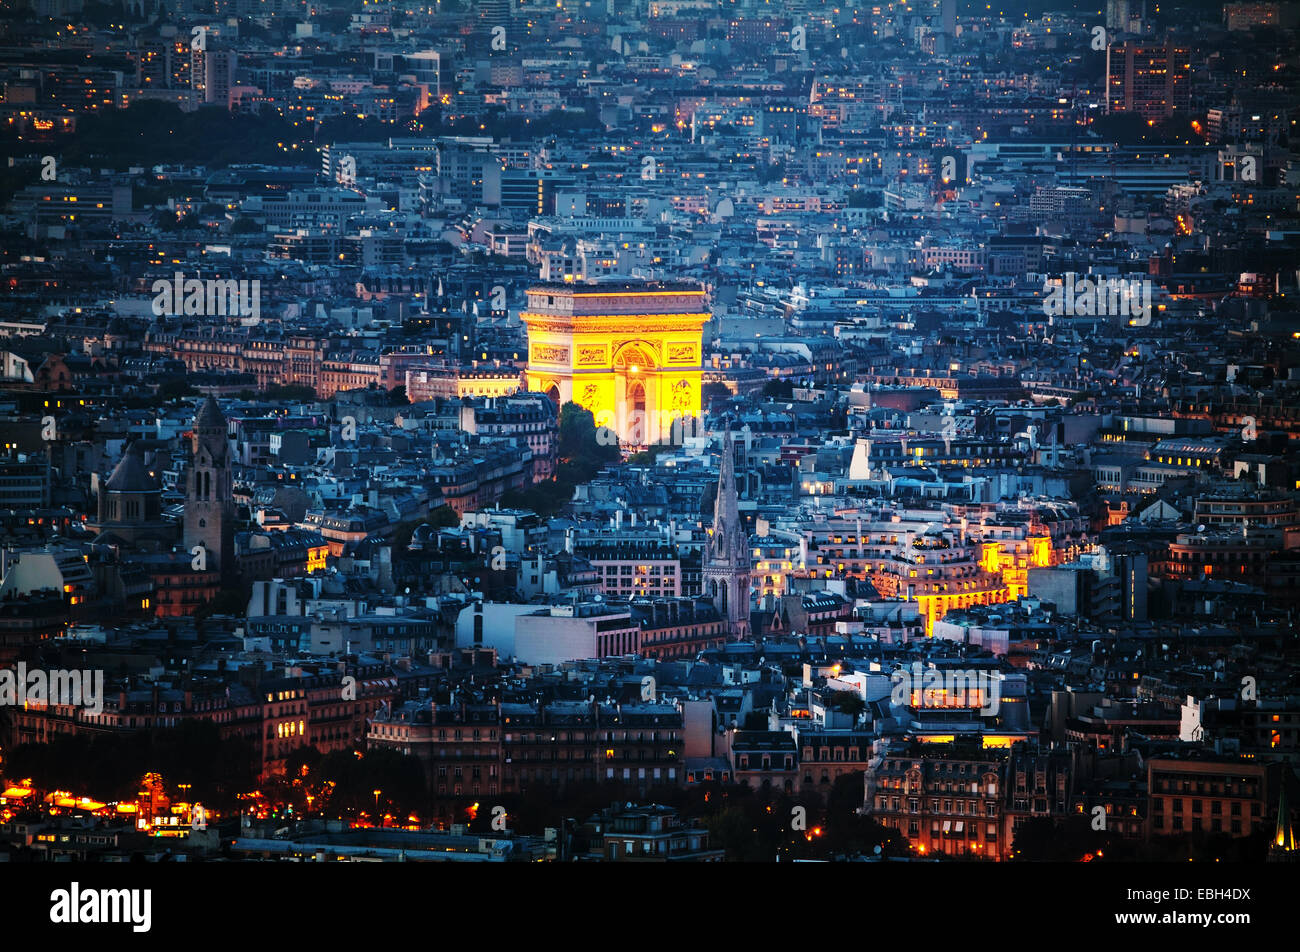 Vue aérienne de l'Arc de Triomphe de l'Etoile (Arc de Triomphe) à Paris la nuit Banque D'Images